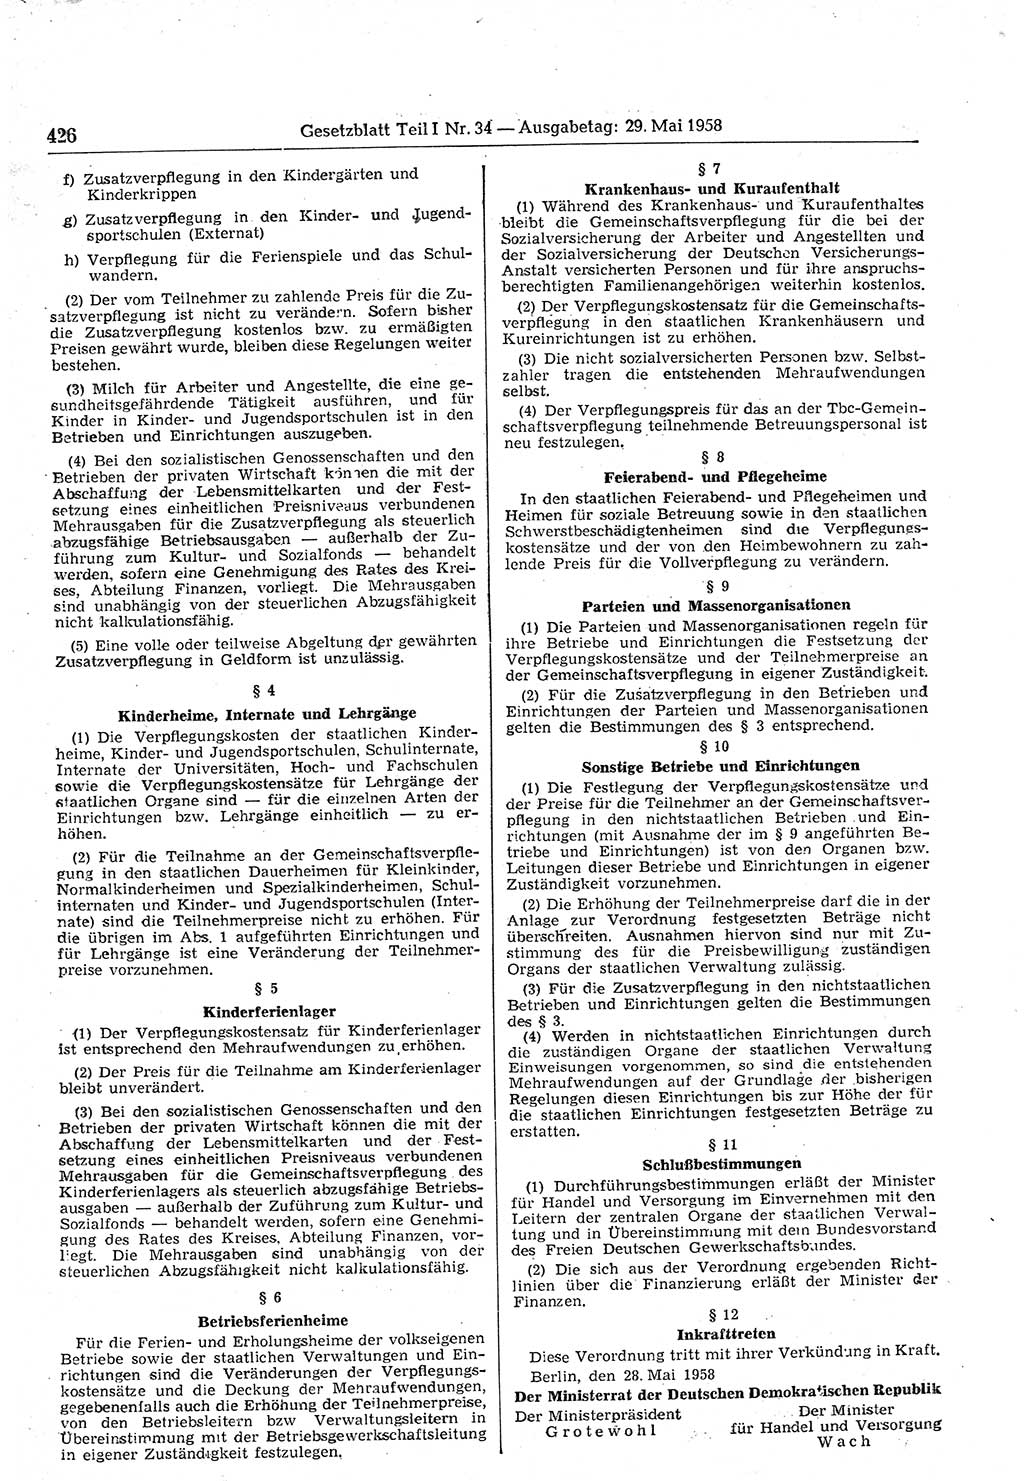 Gesetzblatt (GBl.) der Deutschen Demokratischen Republik (DDR) Teil Ⅰ 1958, Seite 426 (GBl. DDR Ⅰ 1958, S. 426)